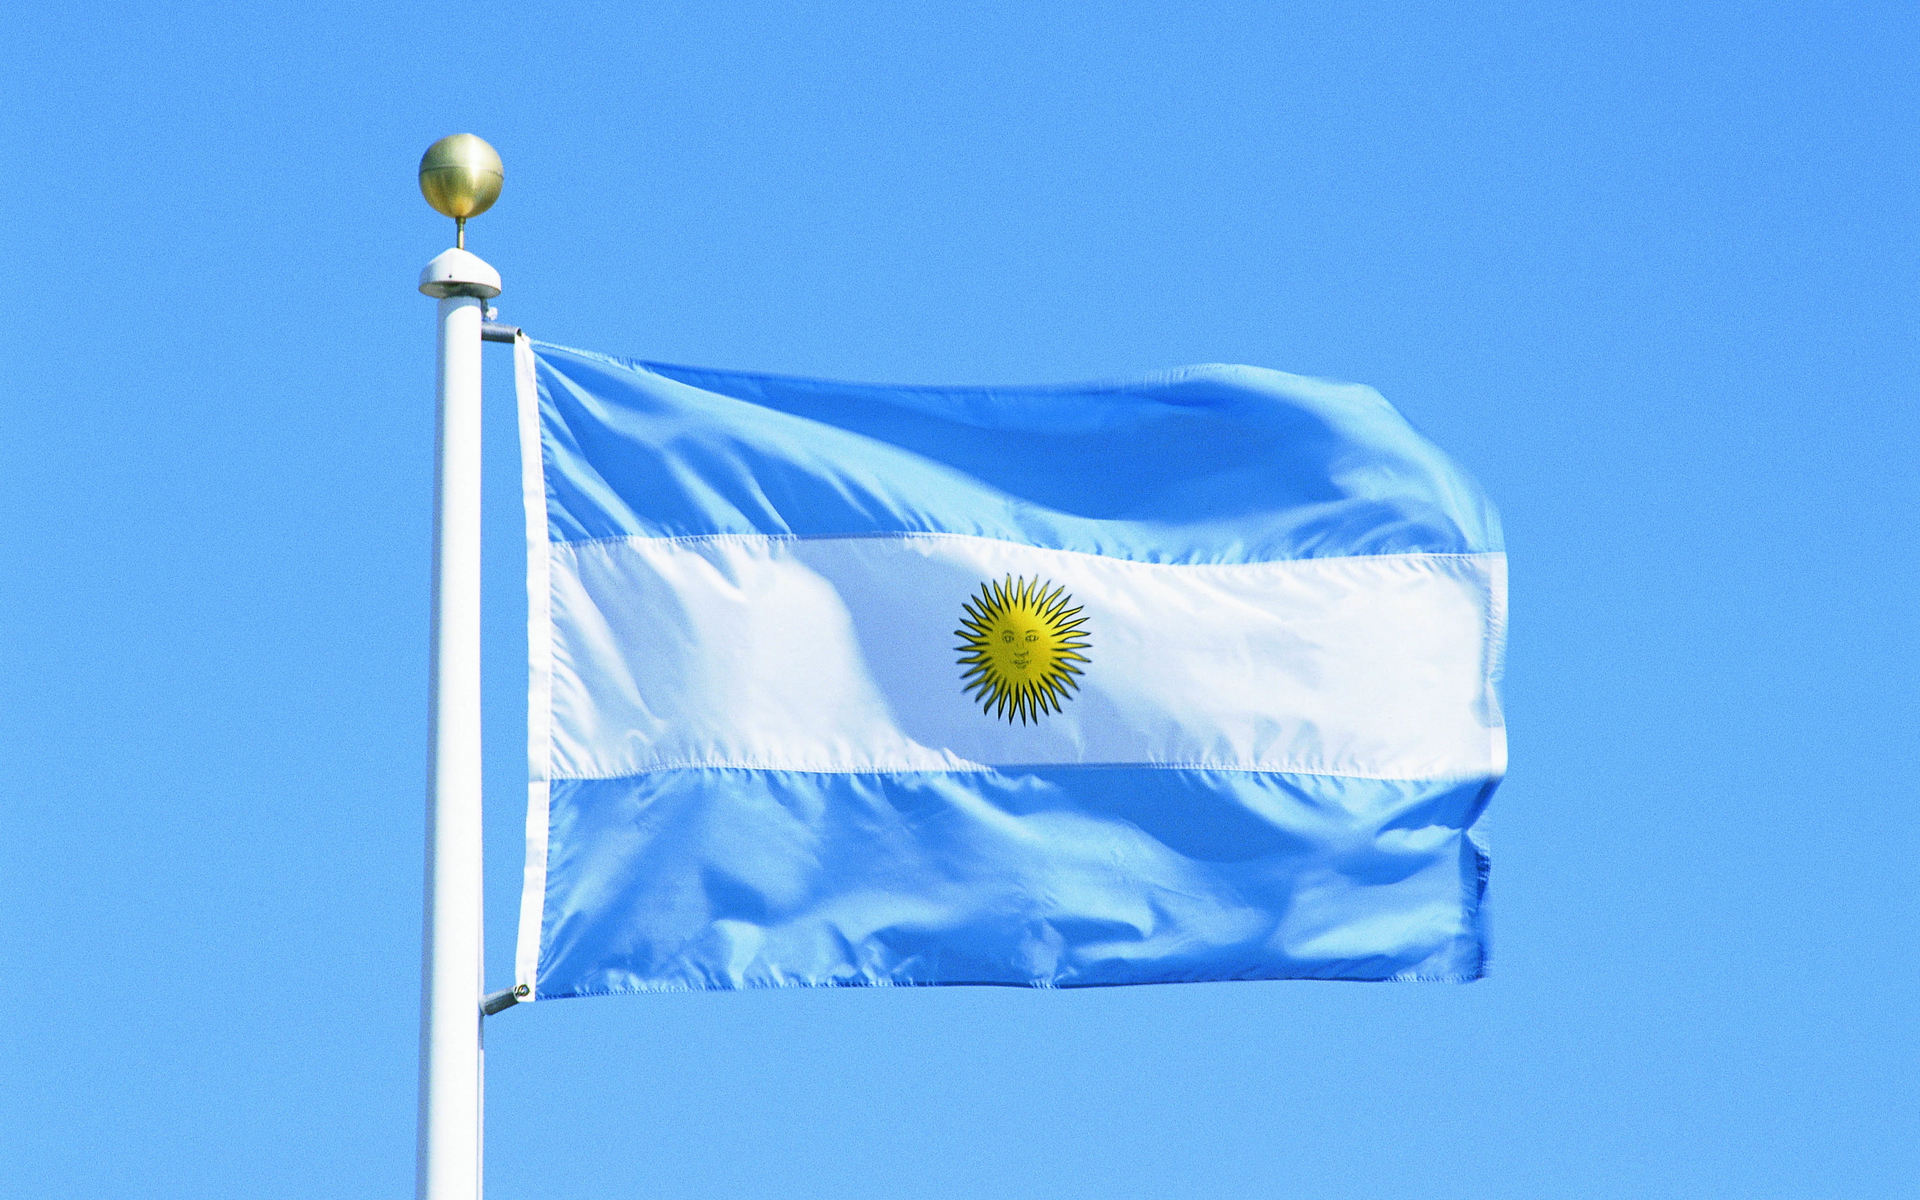 Argentina Flag Wallpaper